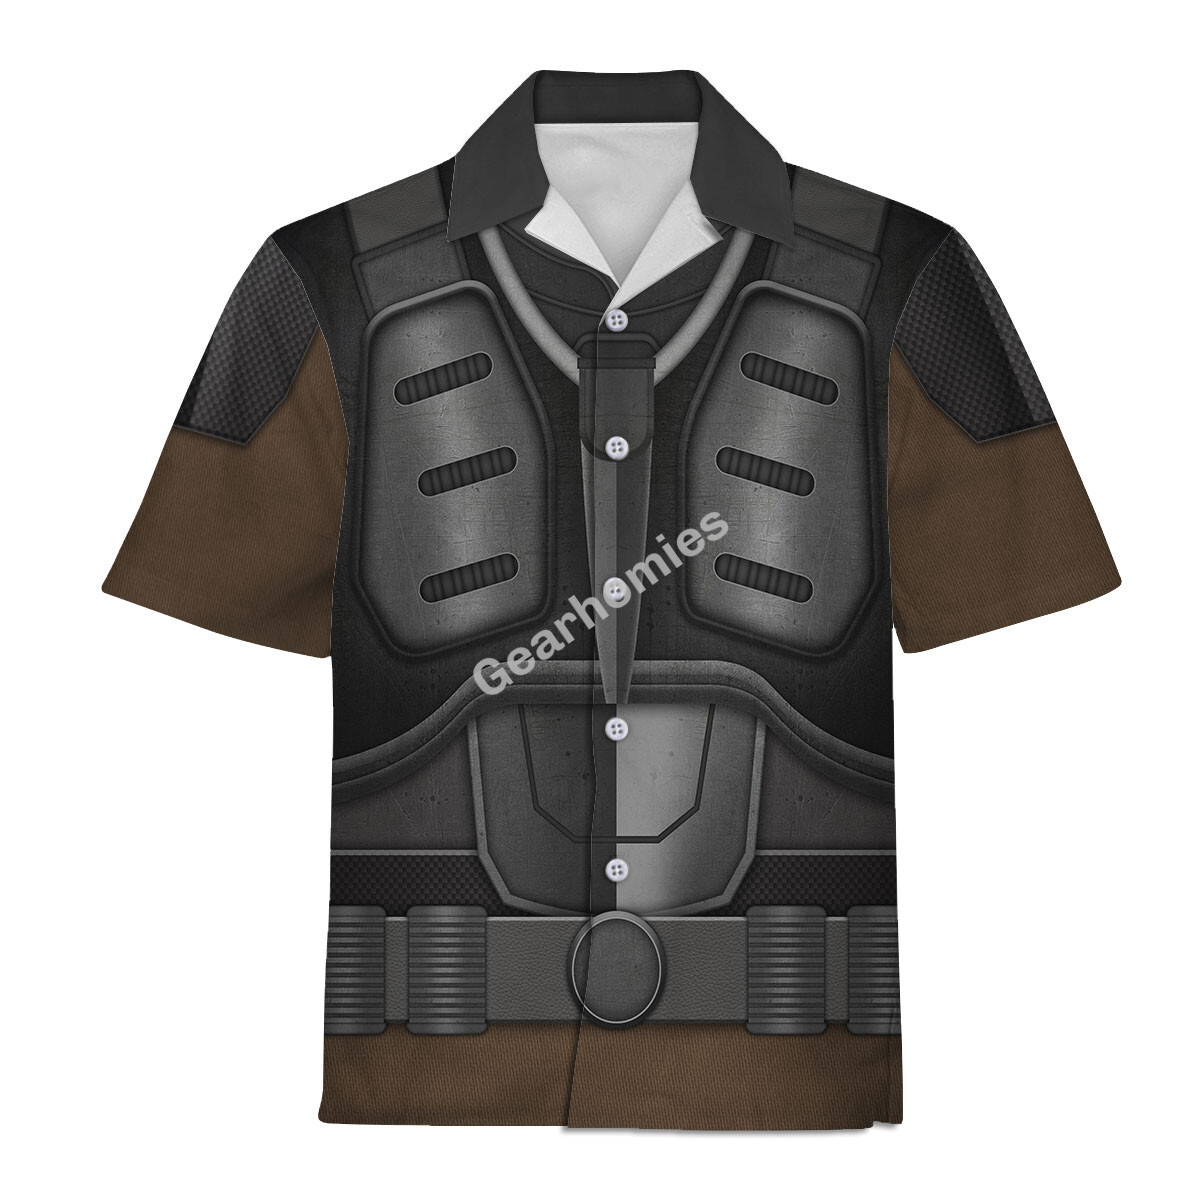 Cobra Mercenary Major Bludd Hoodies Sweatshirt T-Shirt Hawaiian ...